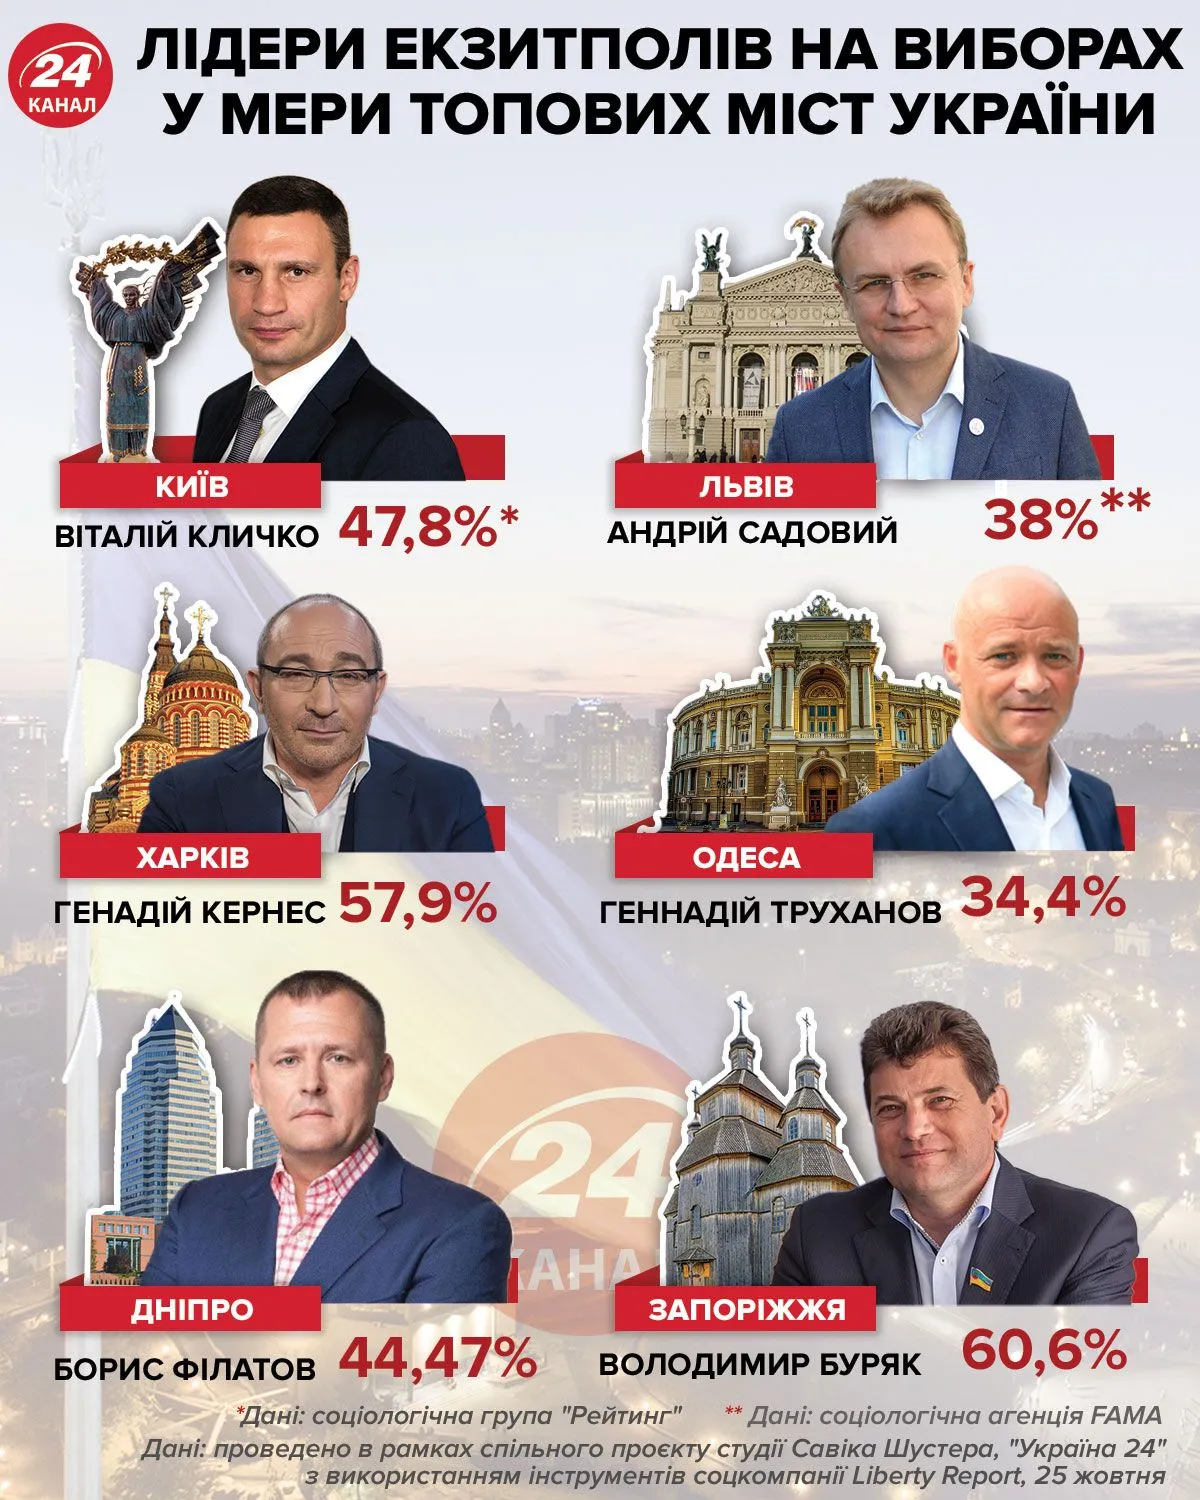 Як відбулися вибори мерів у топових містах України: дані екзитполів 